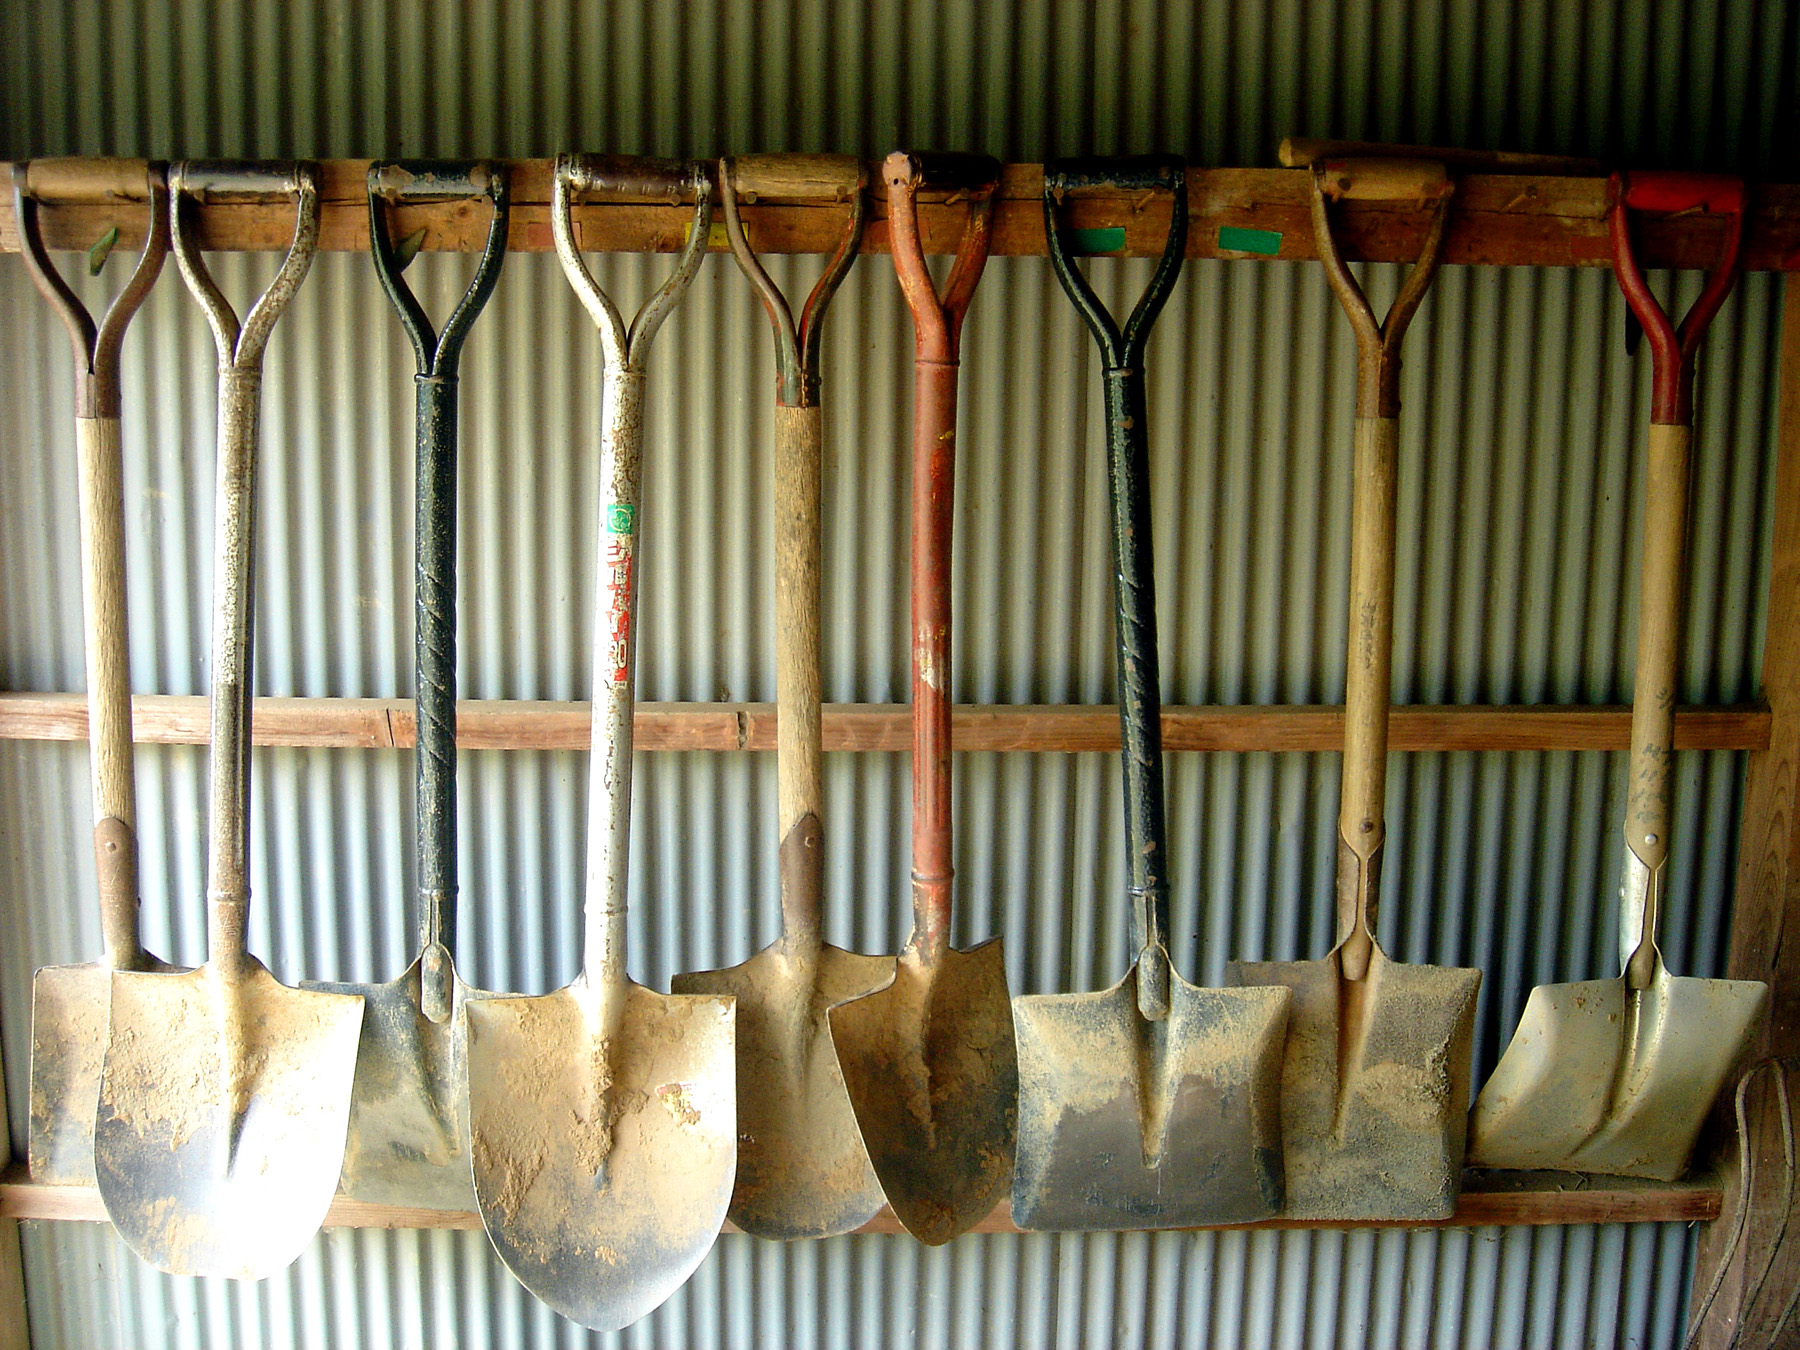 Shovels on a hanging rack